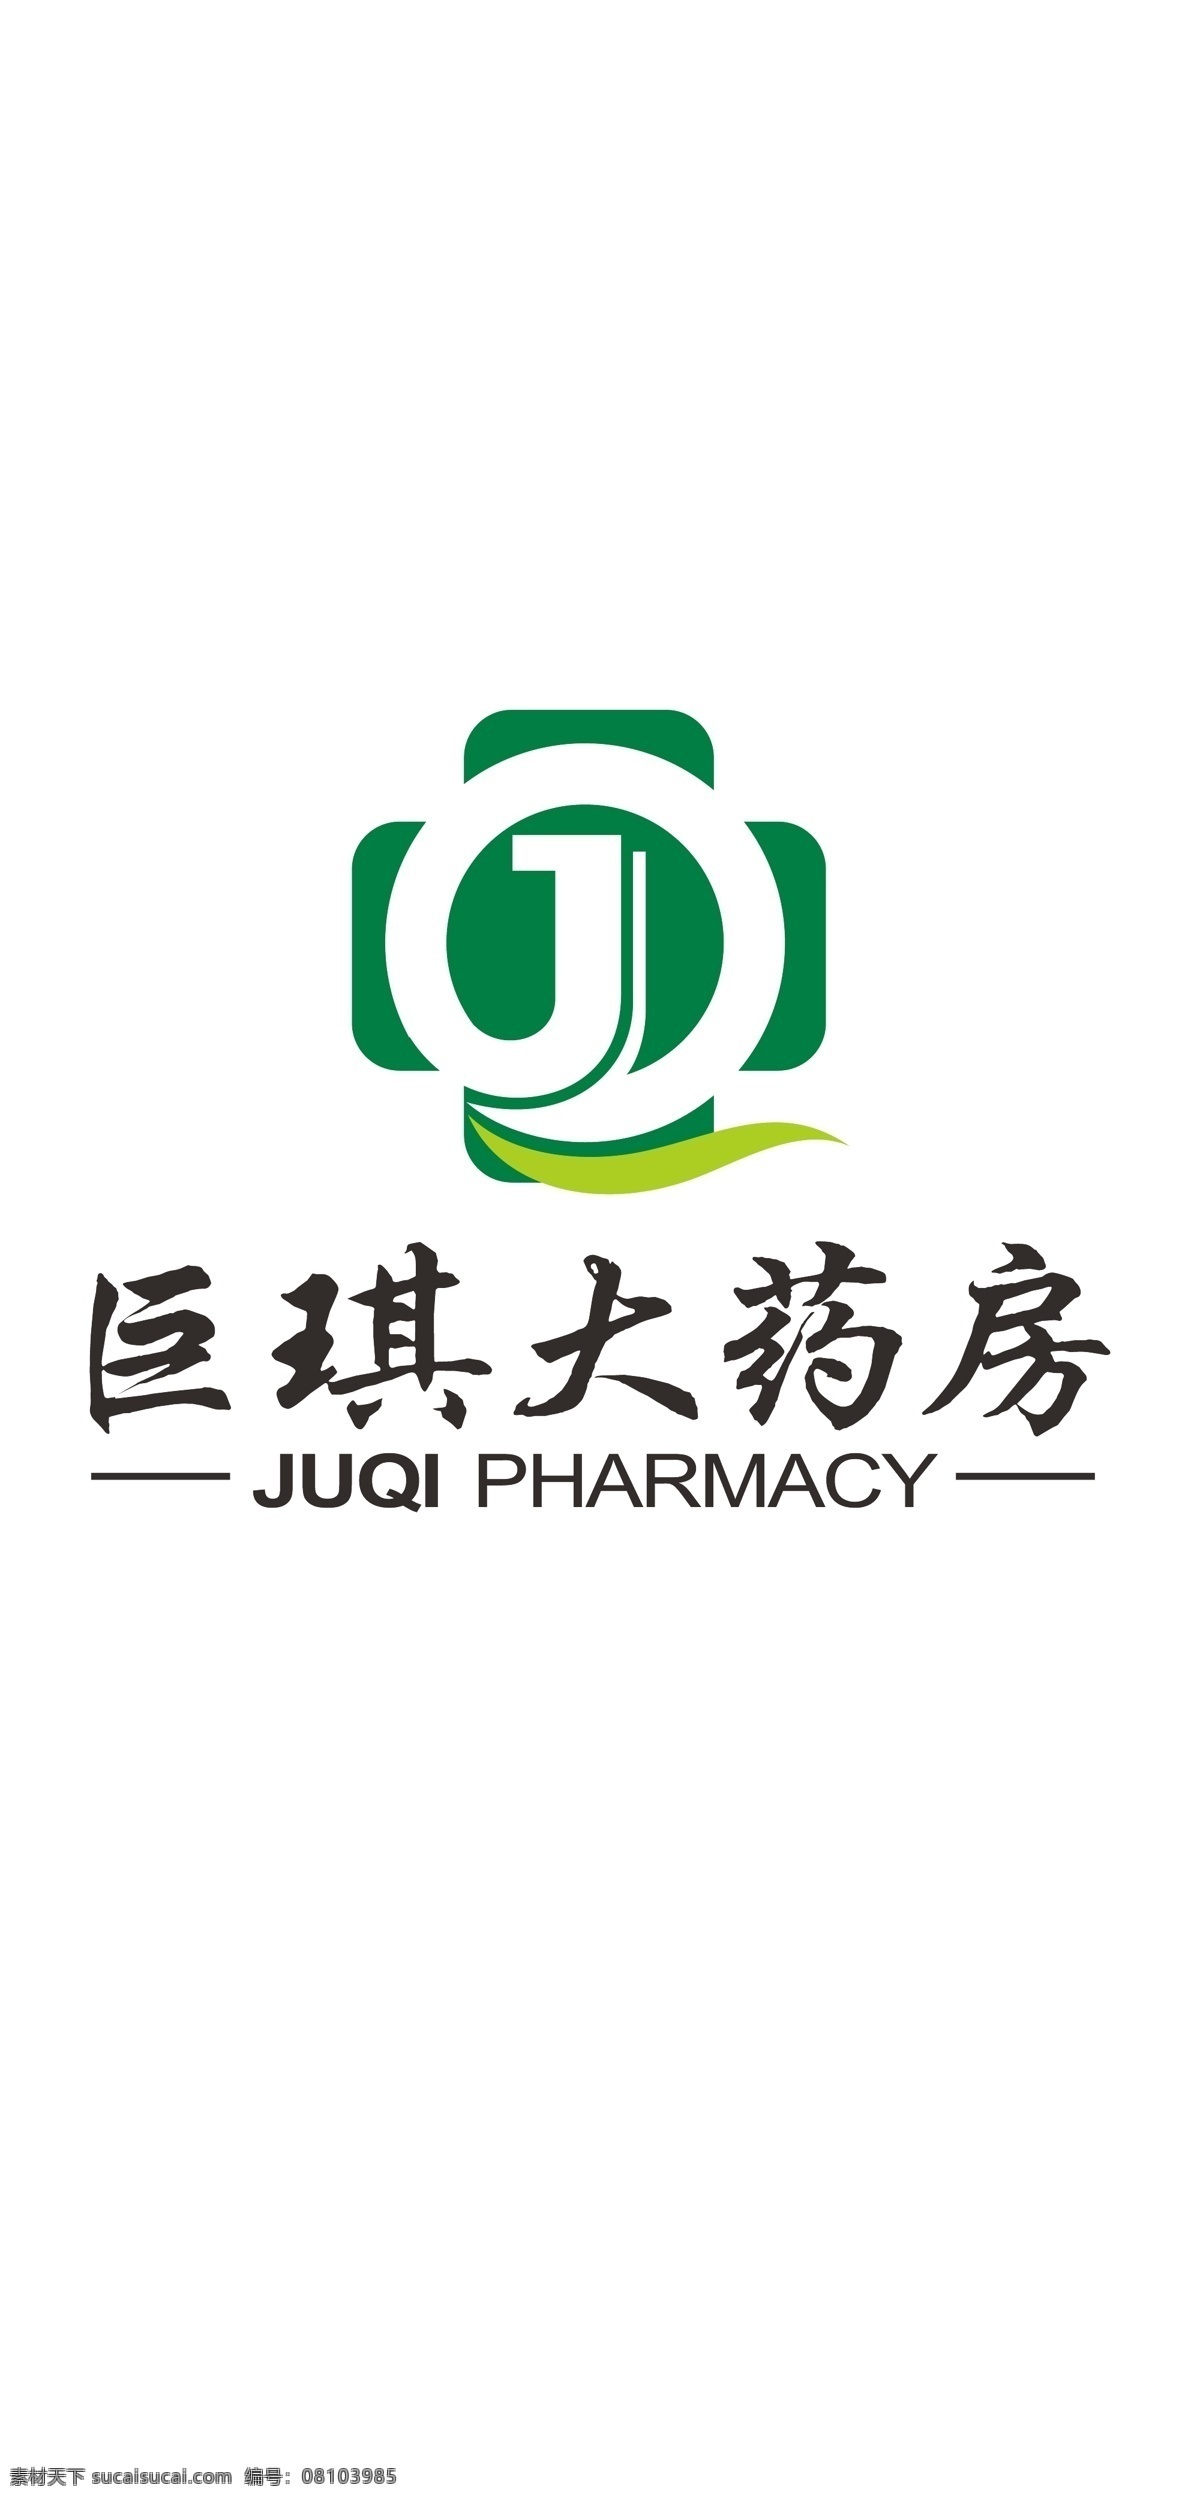 巨 琪 大 药房 logo 巨琪大药房 巨琪 标志 企业 药店 j logo设计